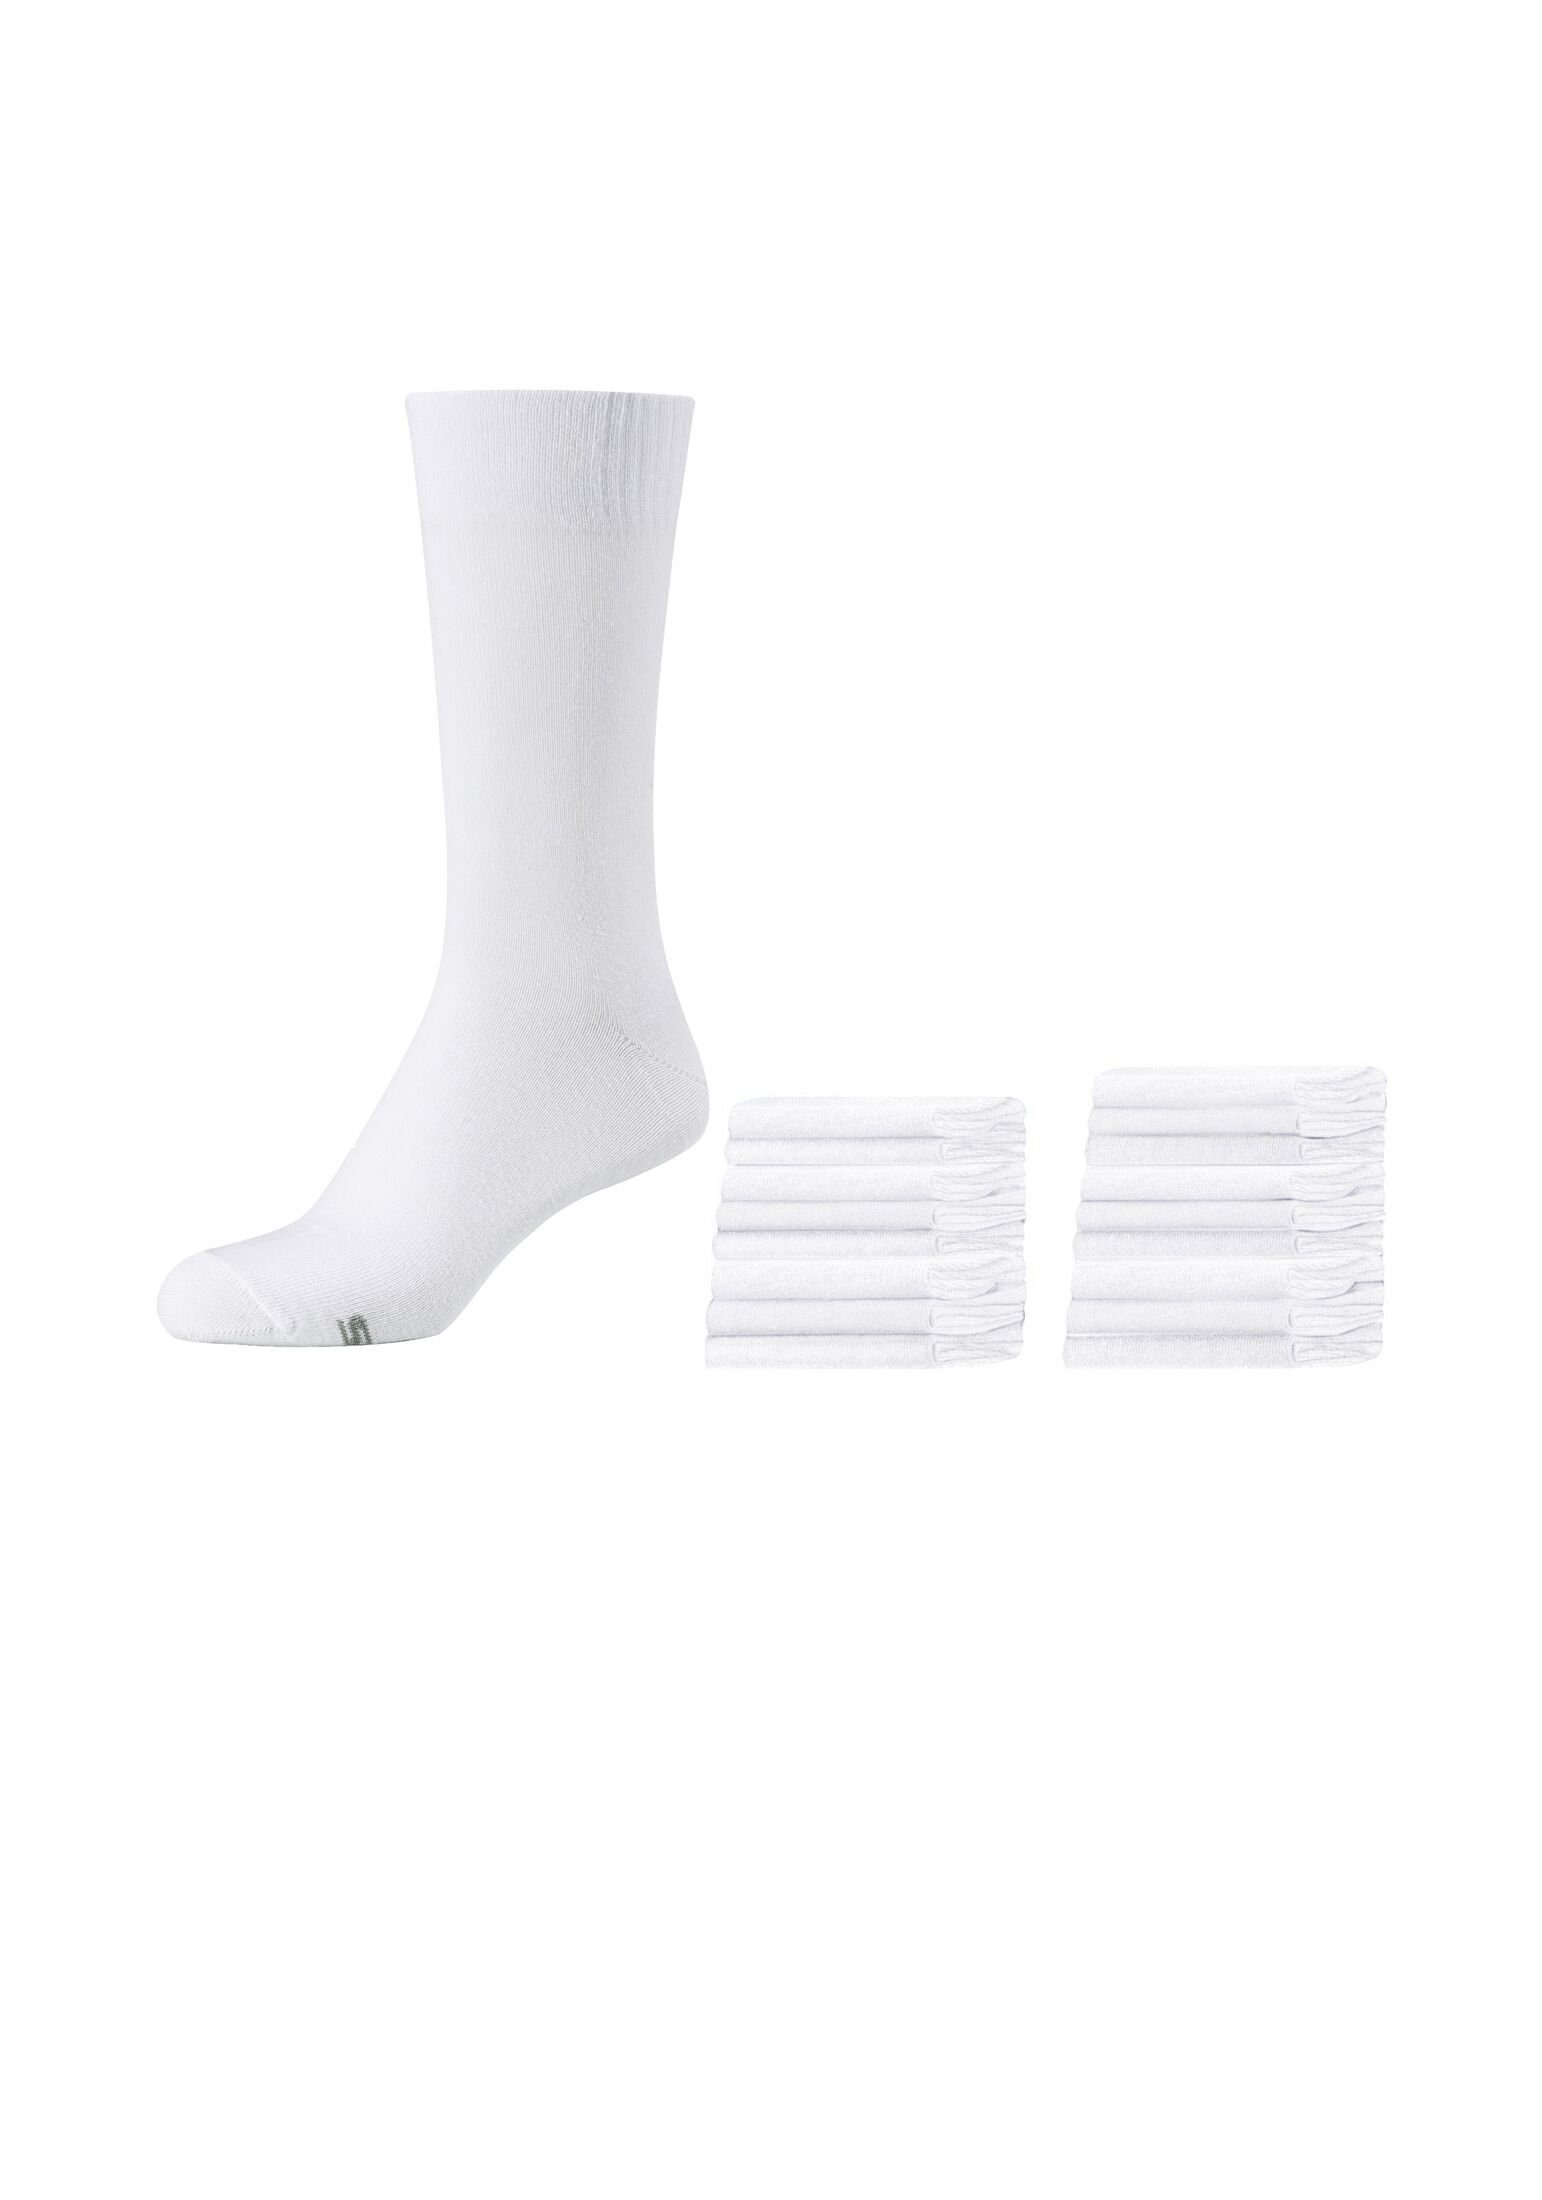 18er Skechers Pack Socken Socken white